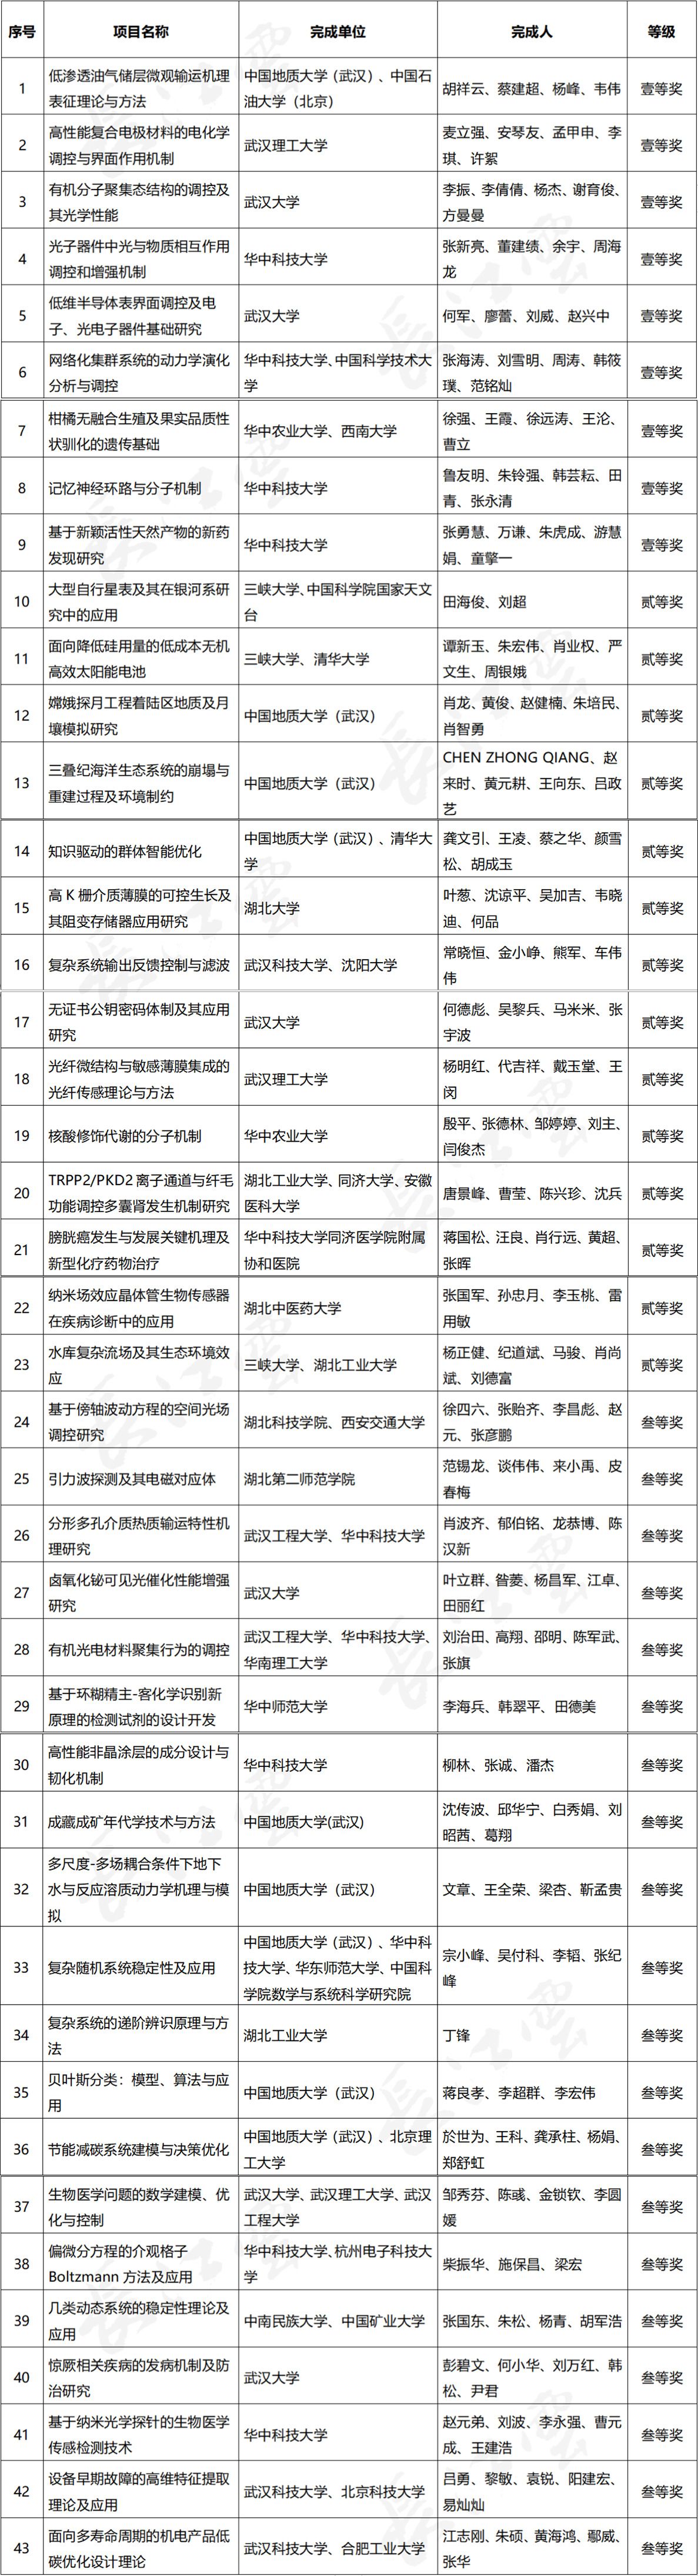 湖北省科学技术奖名单